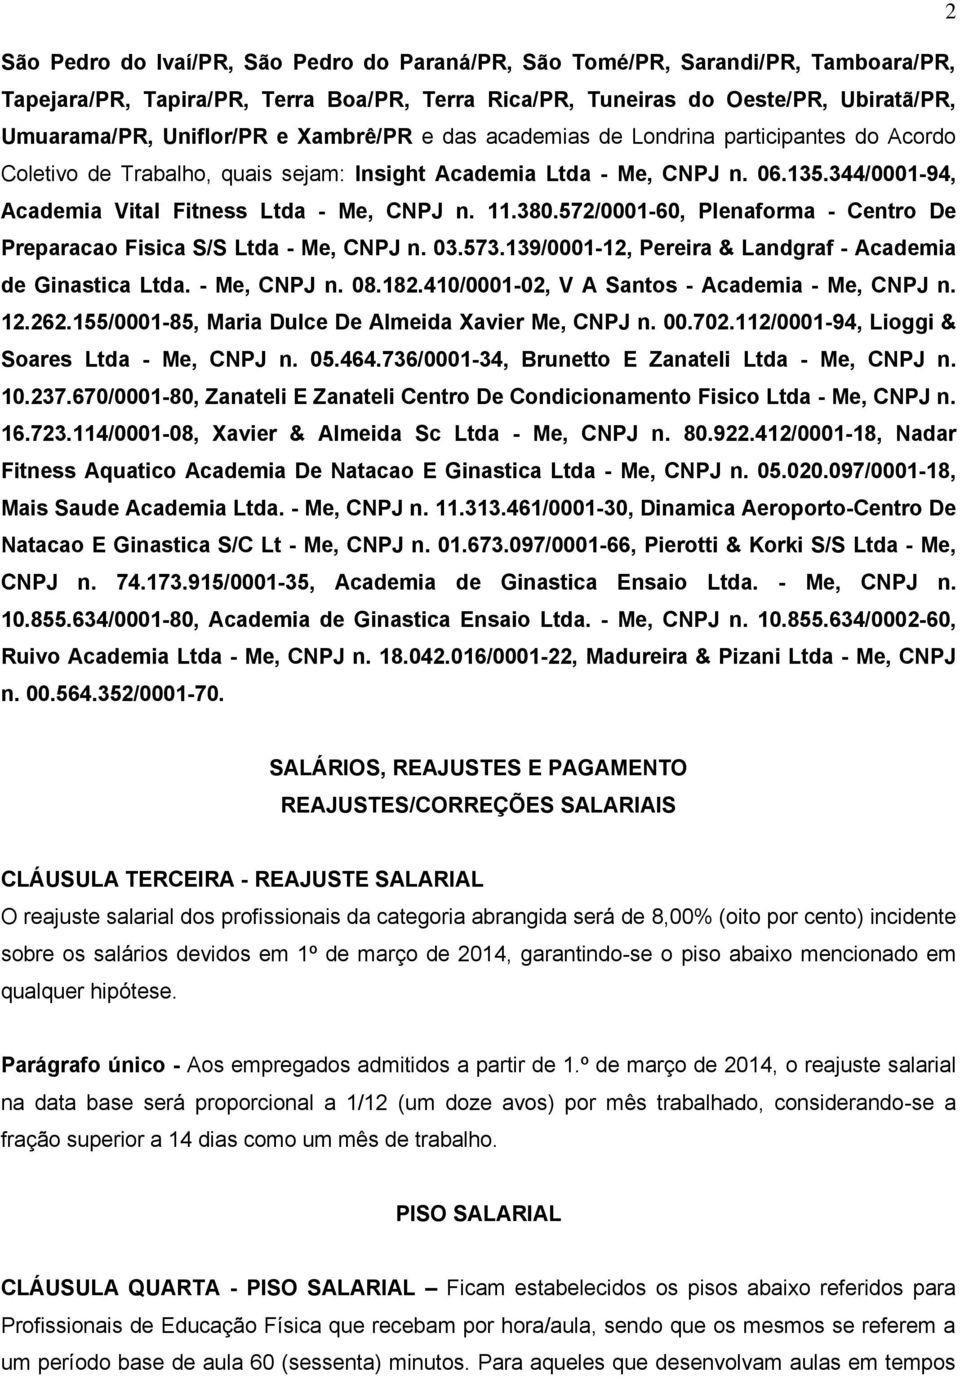 380.572/0001-60, Plenaforma - Centro De Preparacao Fisica S/S Ltda - Me, CNPJ n. 03.573.139/0001-12, Pereira & Landgraf - Academia de Ginastica Ltda. - Me, CNPJ n. 08.182.